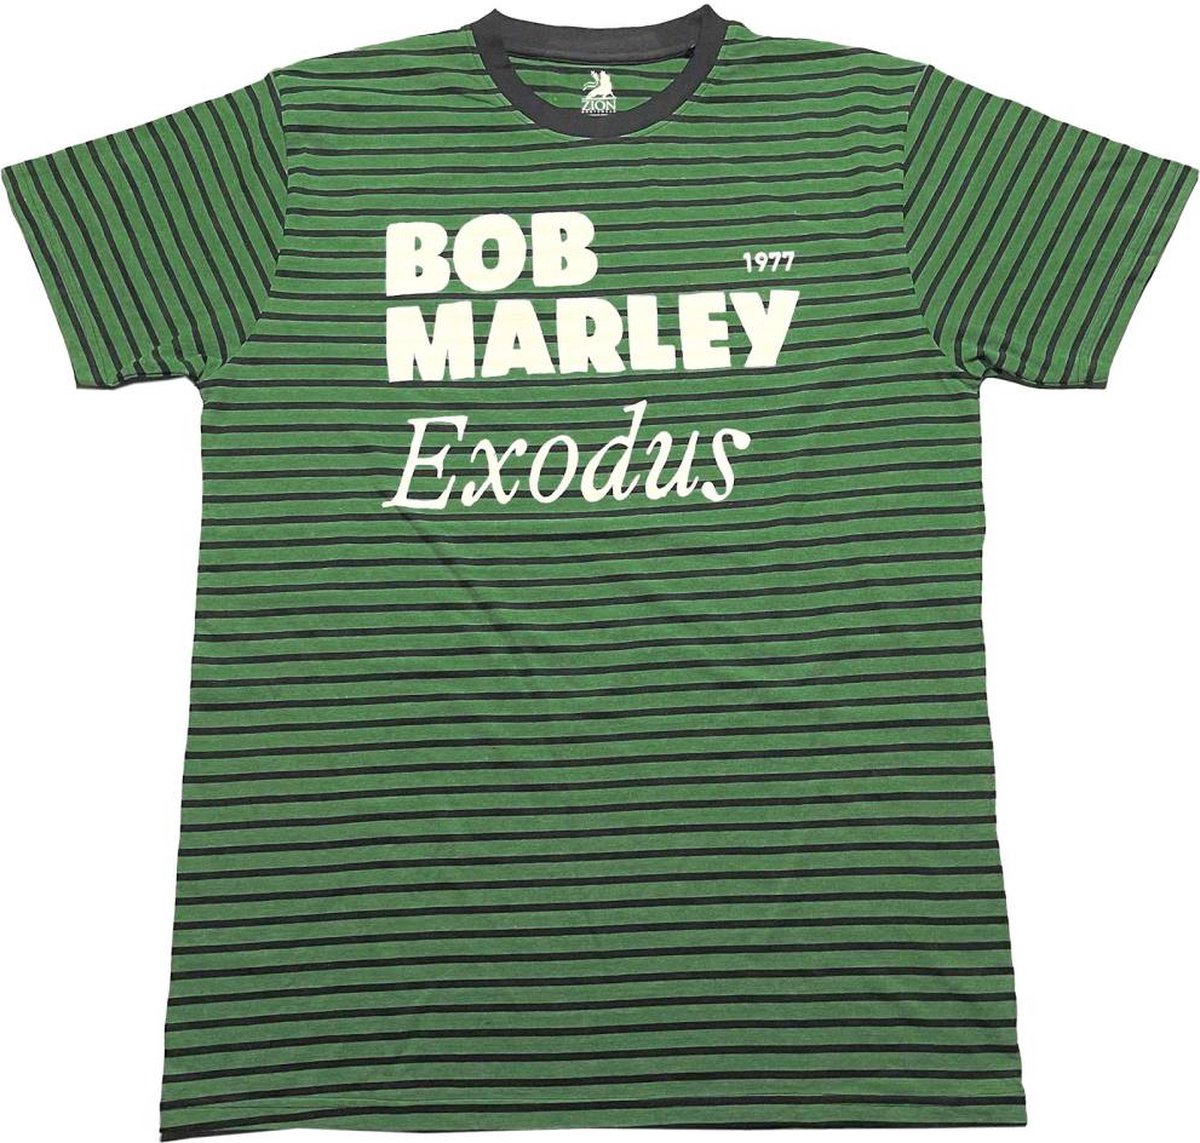 Bob Marley - Exodus Heren T-shirt - L - Groen